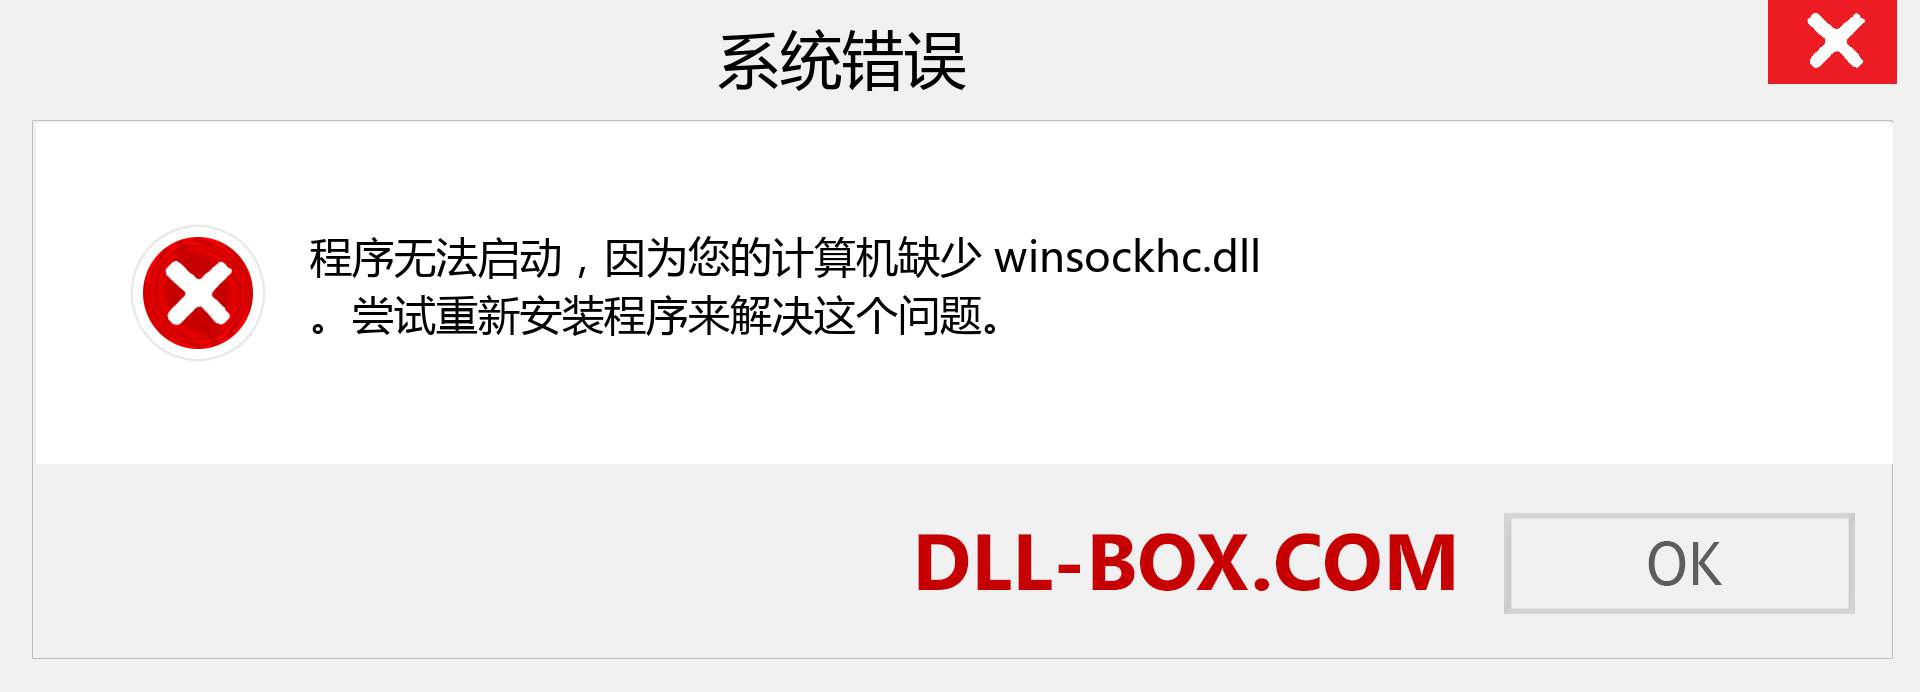 winsockhc.dll 文件丢失？。 适用于 Windows 7、8、10 的下载 - 修复 Windows、照片、图像上的 winsockhc dll 丢失错误